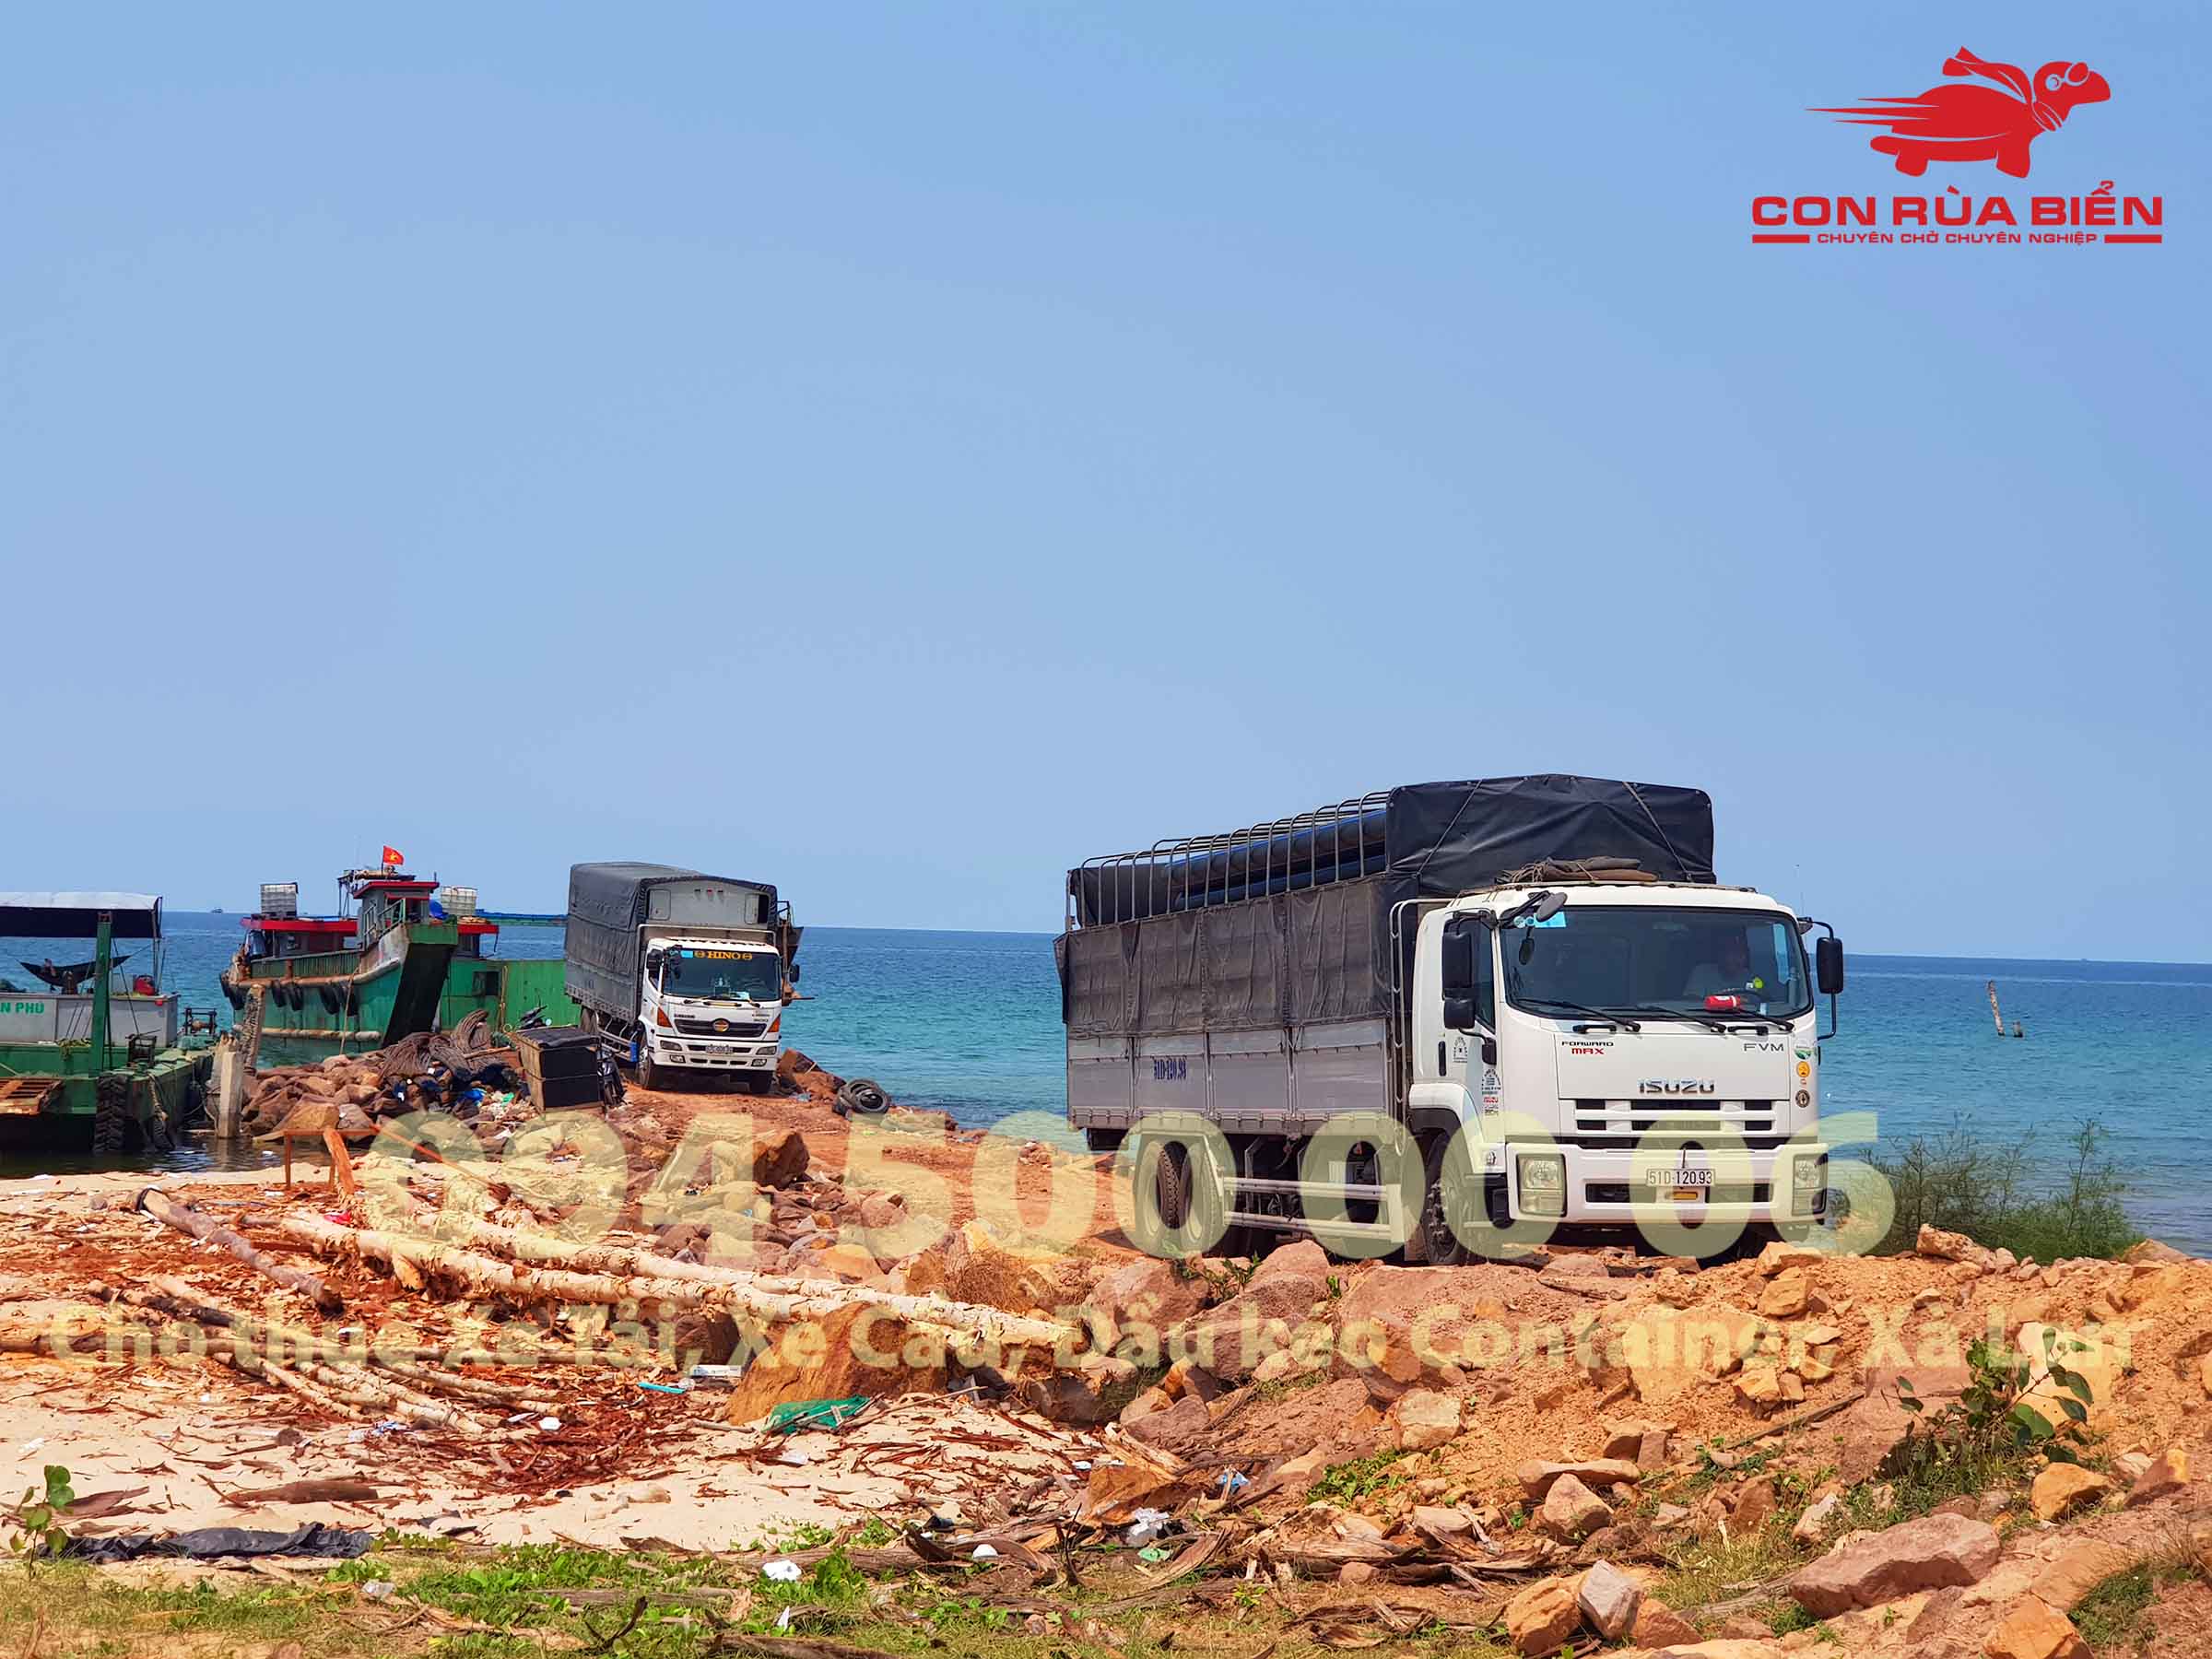 Chành xe Phú Quốc - Con Rùa Biển là đơn vị vận tải hàng hóa đang cung cấp dịch vụ Nhà xe đi Phú Quốc Kiên Giang với nhiều hình thức đa dạng cho khách hàng.